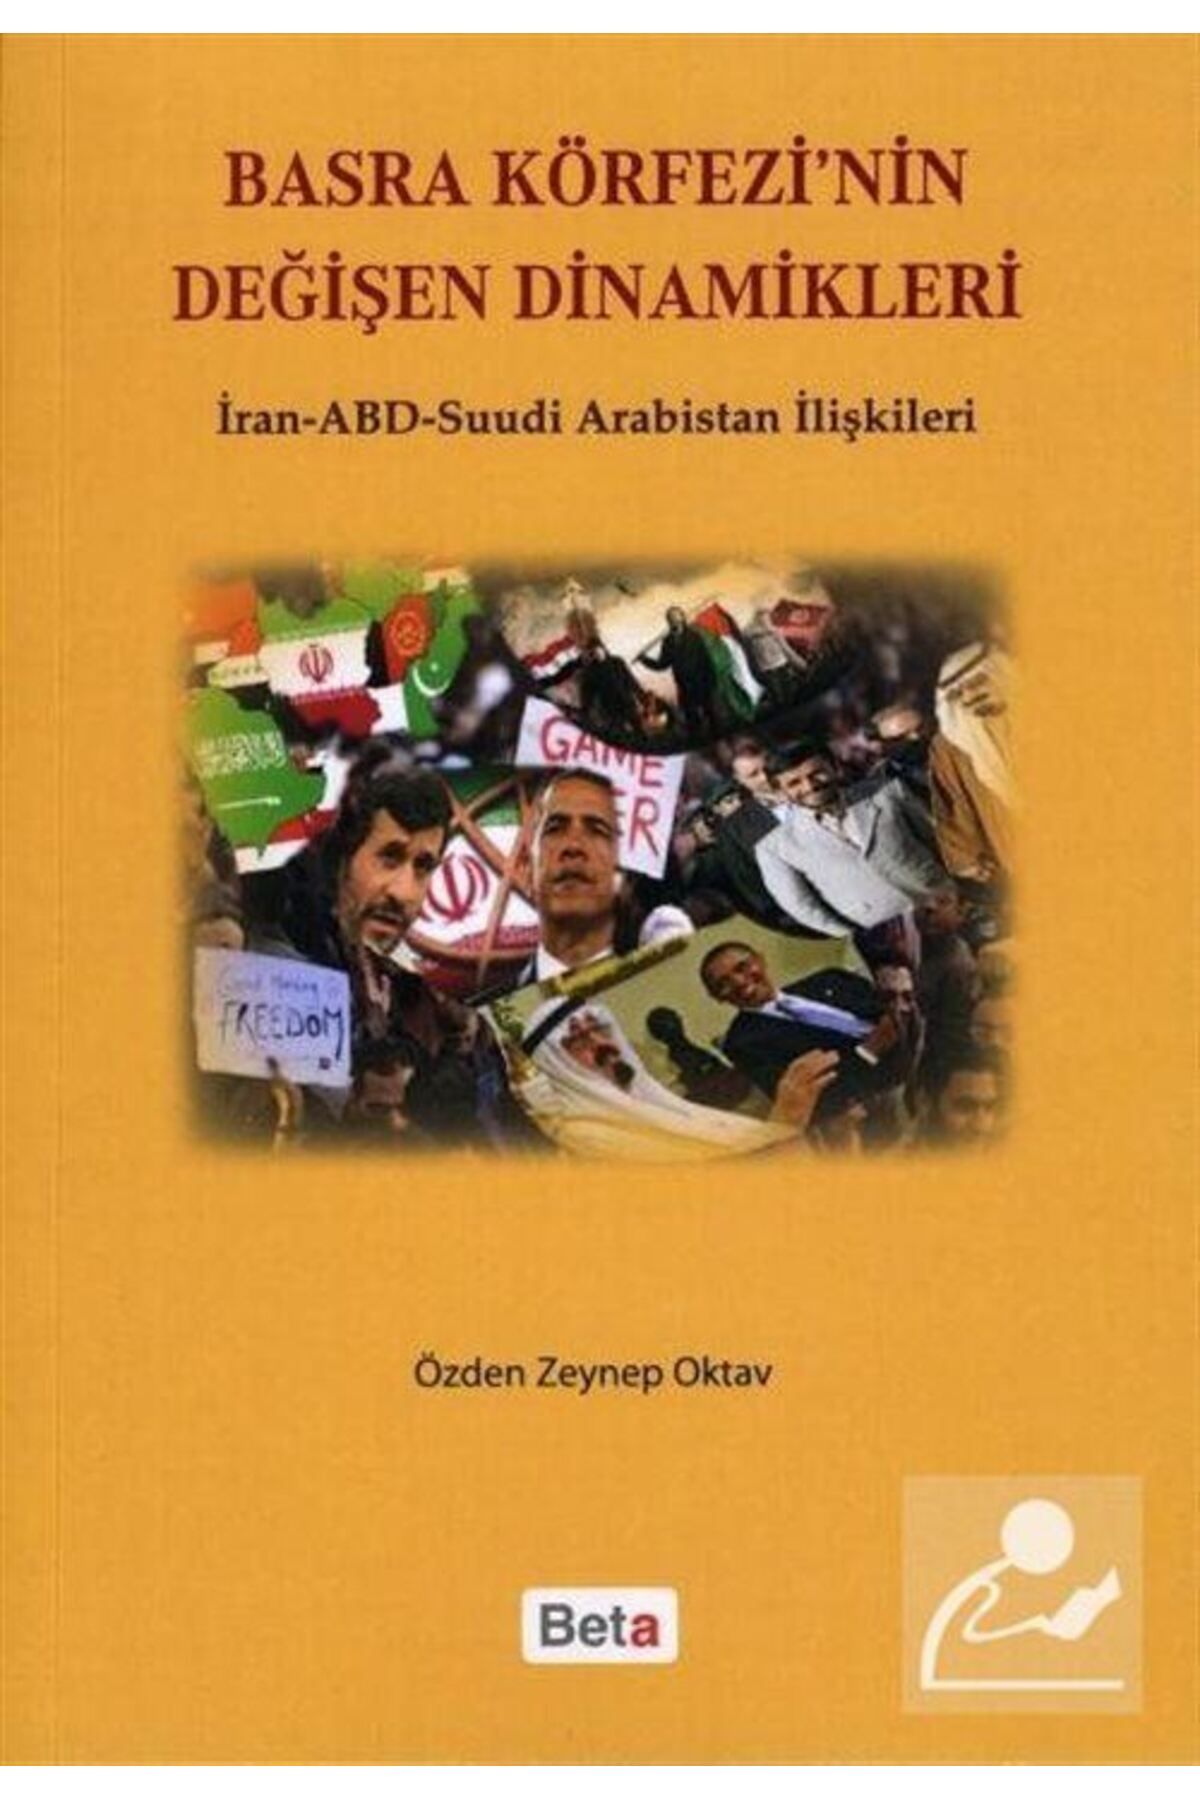 Beta Yayınları Basra Körfezinin Değişen Dinamikleri & Iran-abd-suudi Arabistan Ilişkileri